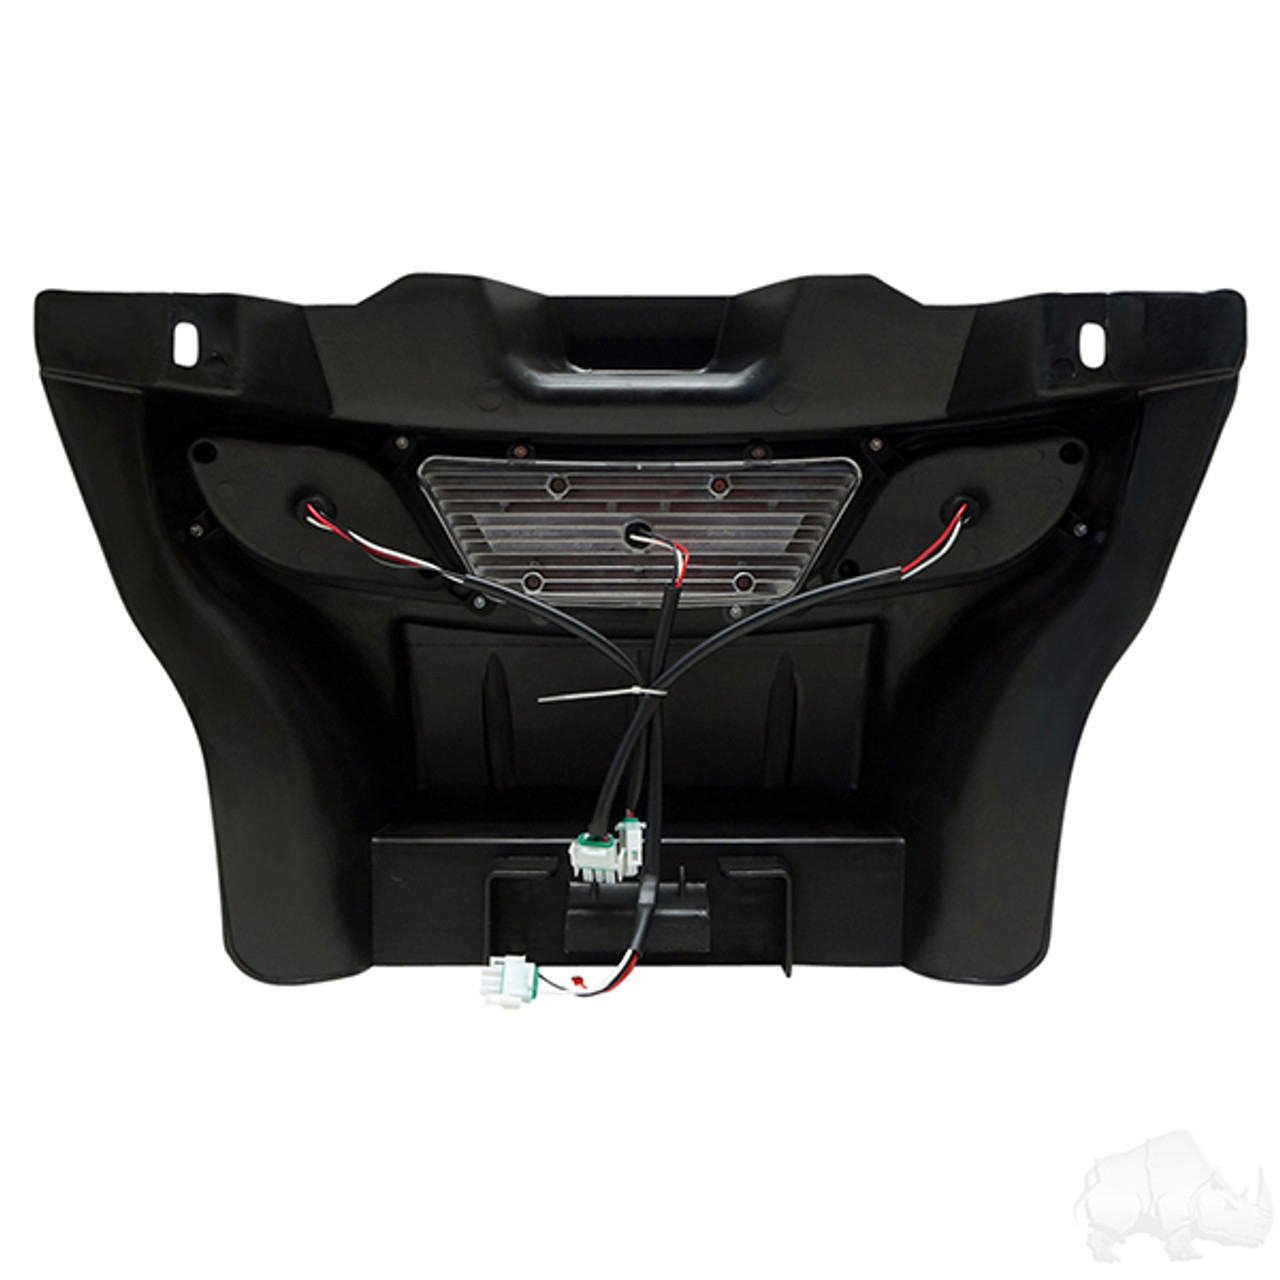 Standard LED Light Bar Kit for Electric E-Z-Go RXV 2008-2015 Golf Cart, LGT-311LT2B7